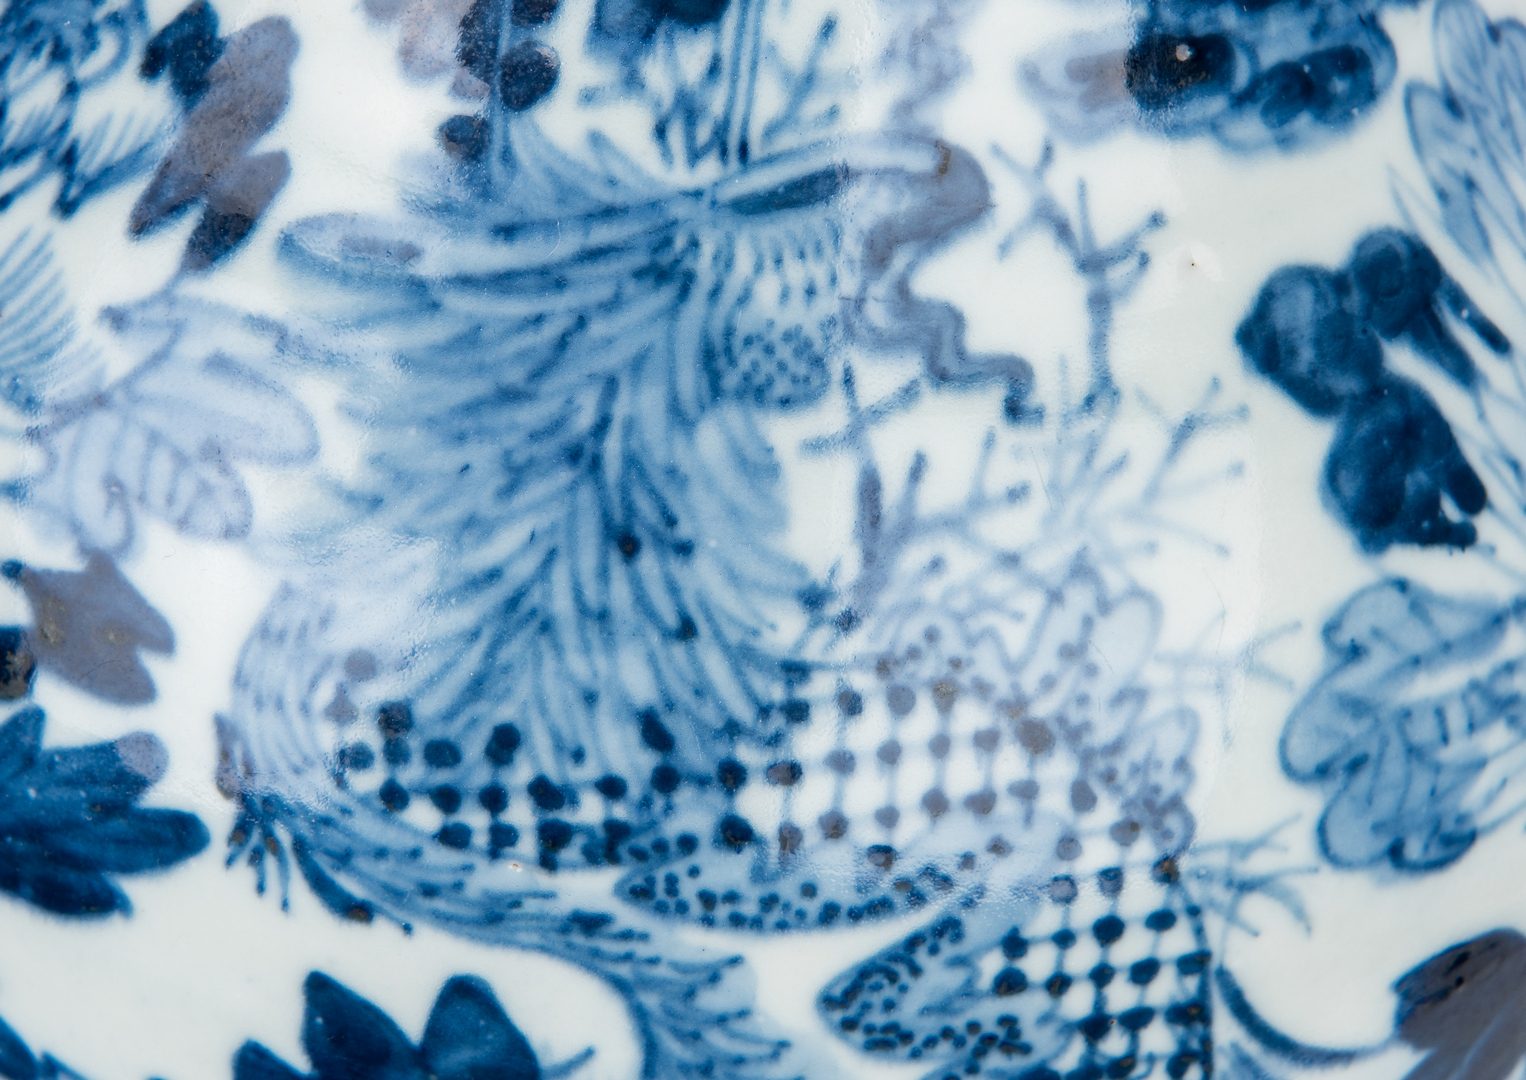 Lot 203: Asian Blue & White Porcelain Vase